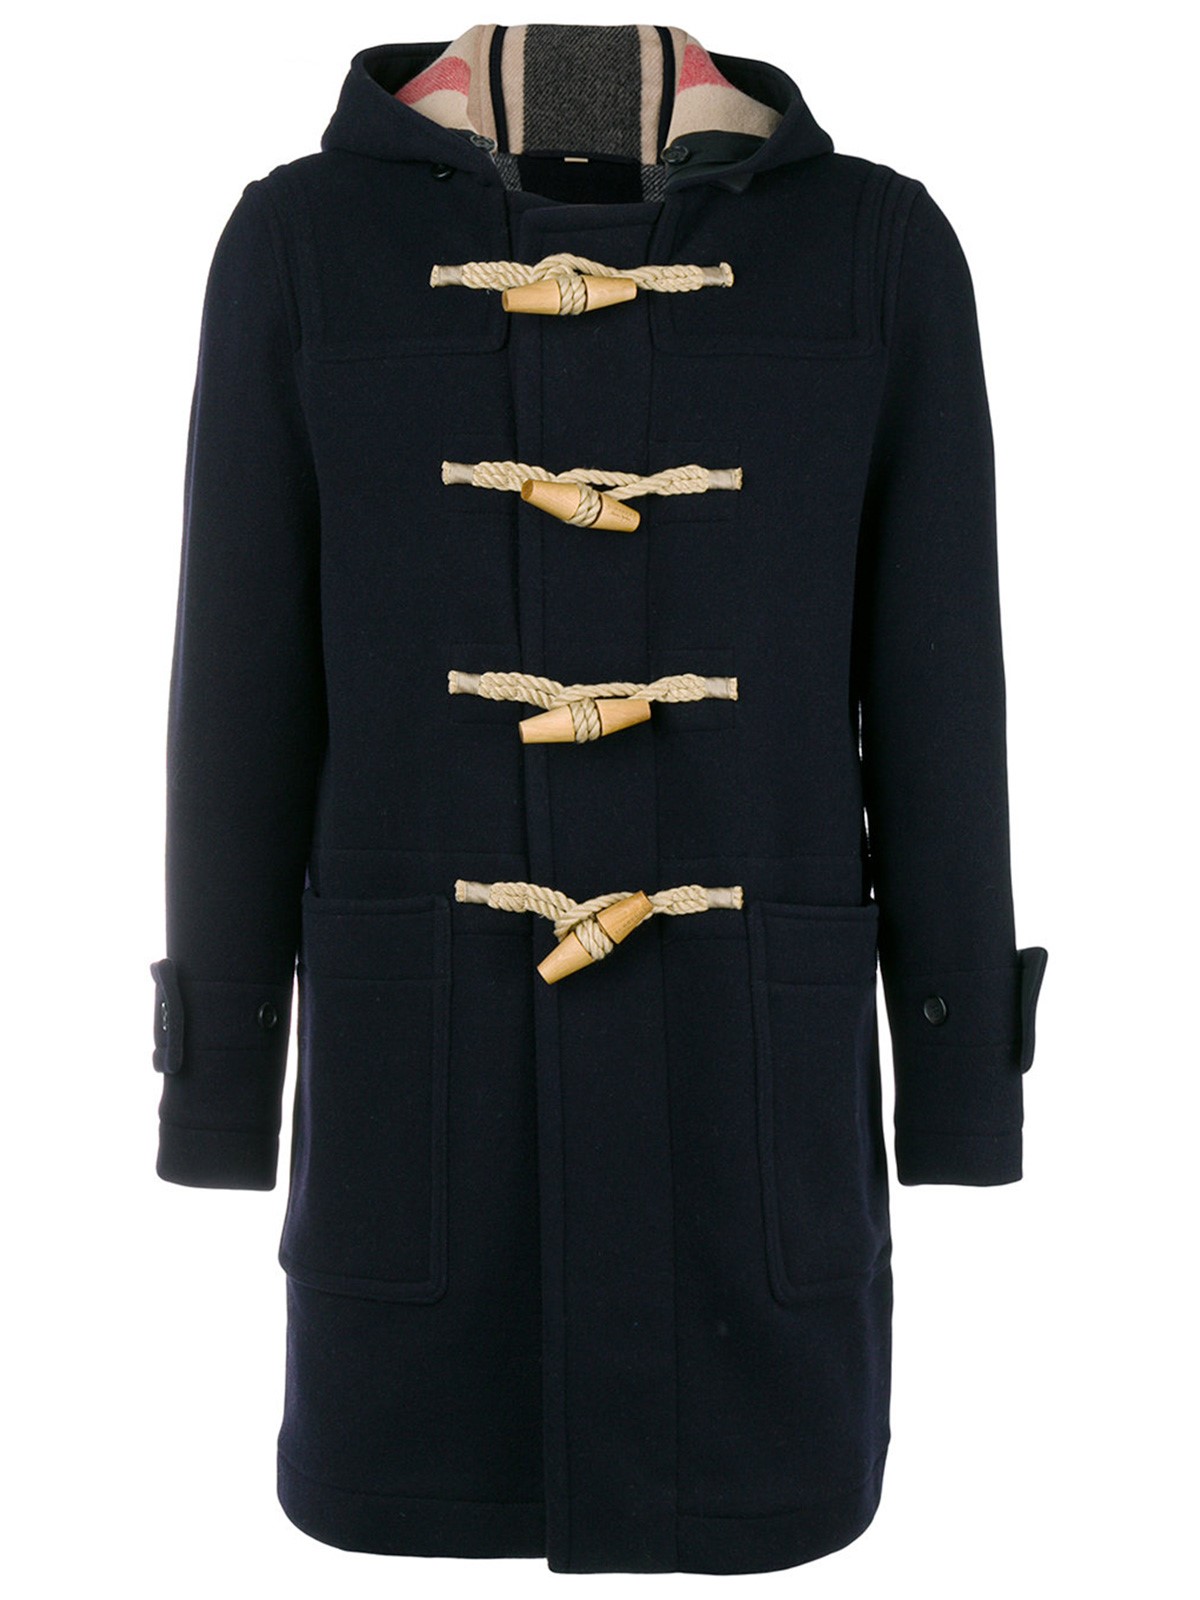 burberry montgomery coat